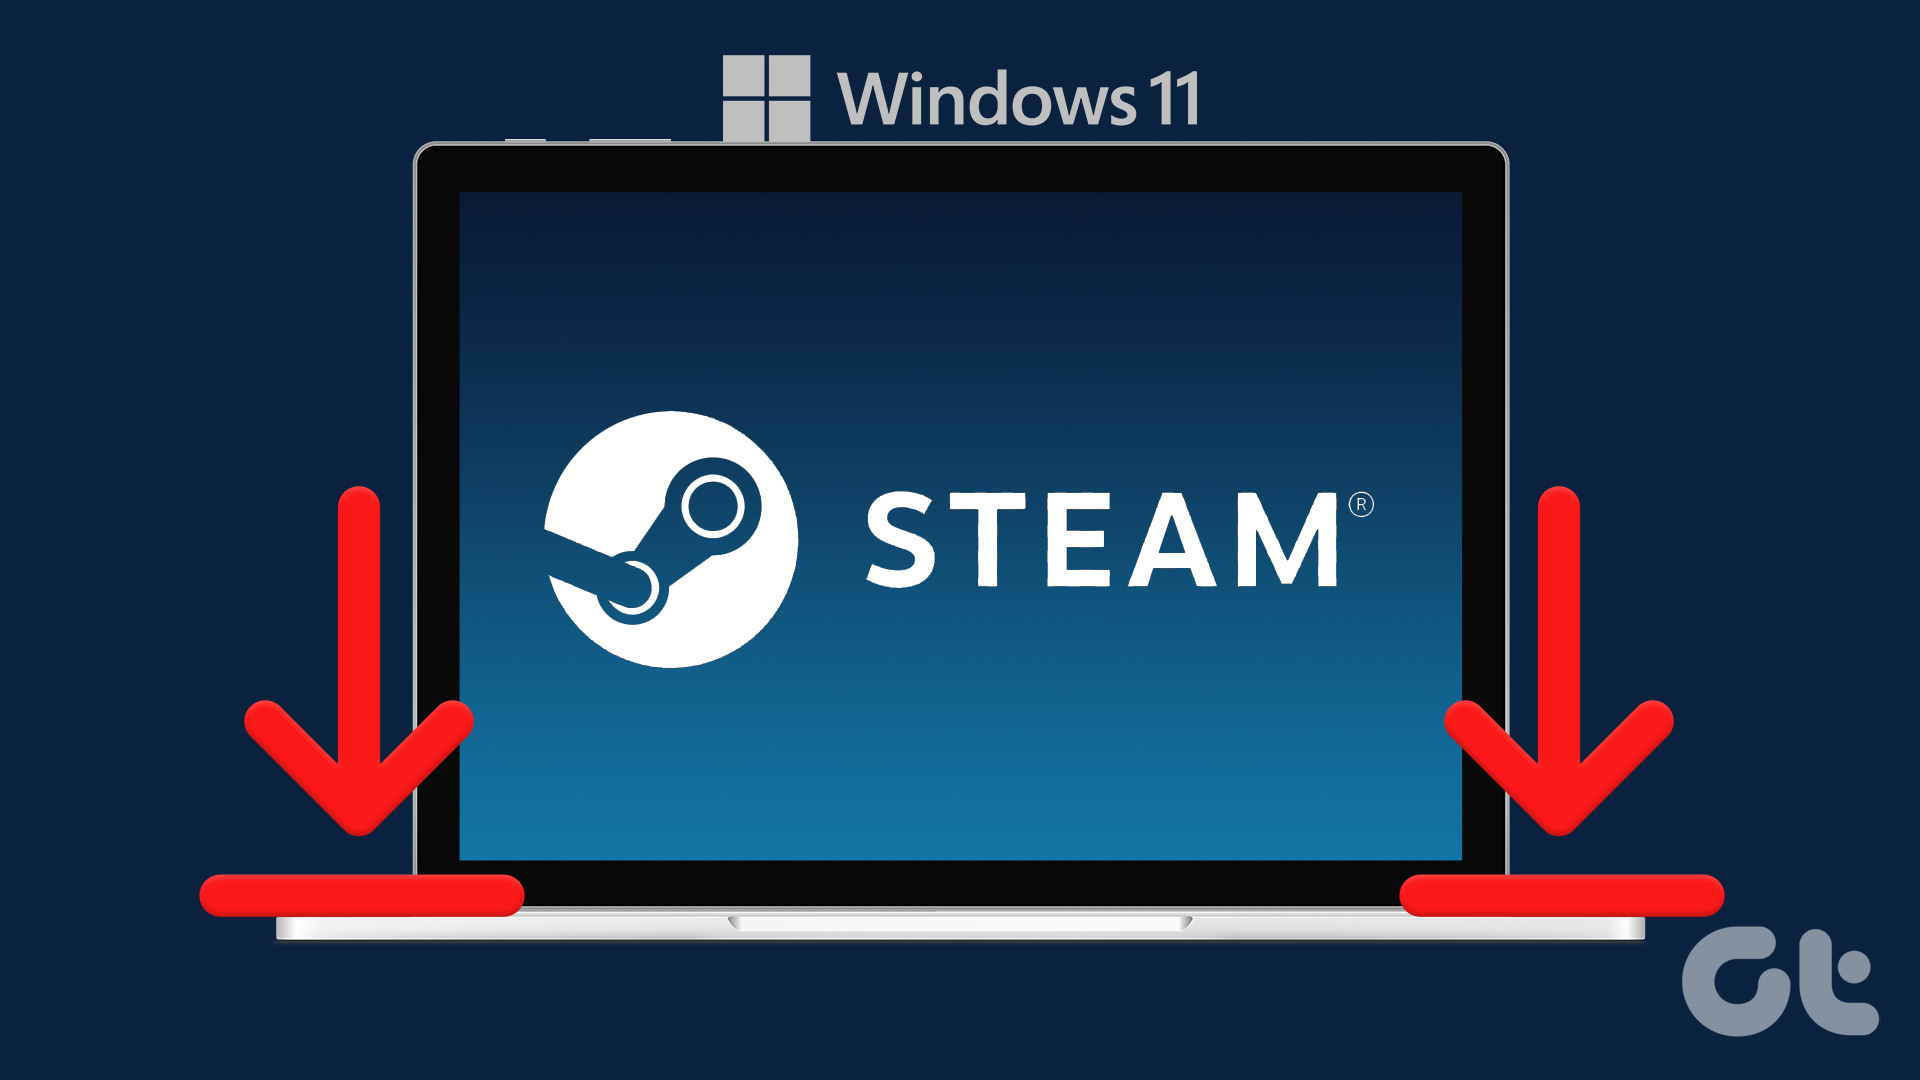 Steam on Windows 11